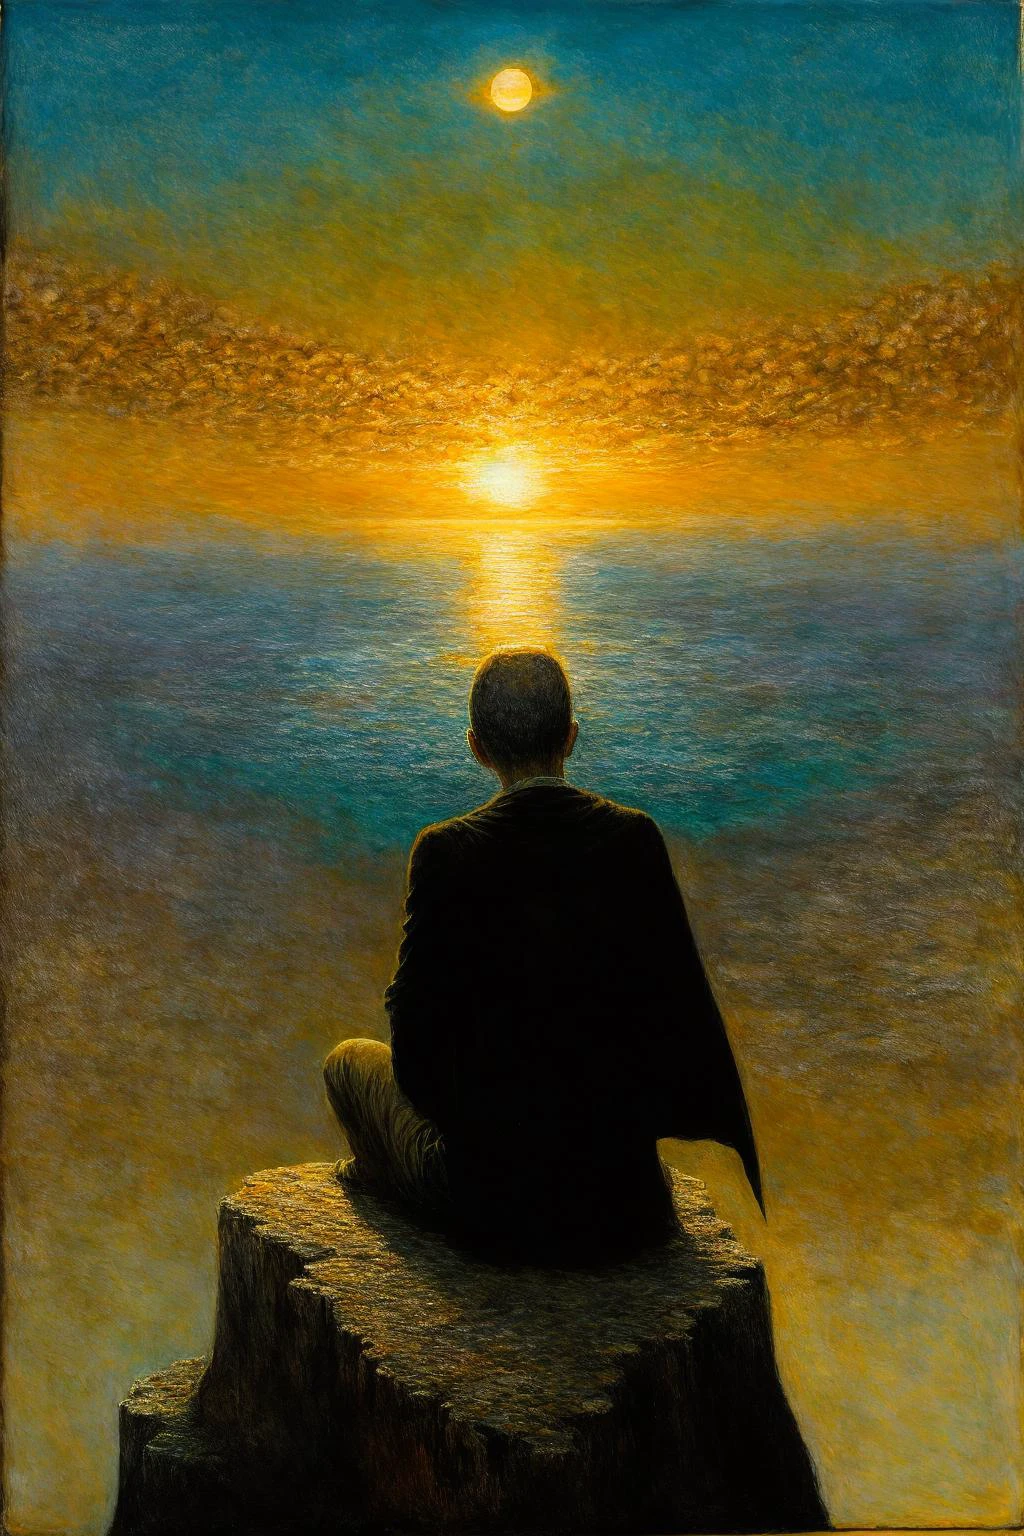 Ein Mann sitzt auf einer Klippe und beobachtet den wunderschönen Sonnenuntergang, winziger Mann, wunderschön, Kap, ((von hinten)), (Doppelte Sonnen, 2 Sonnen:1.2), (Sonnenuntergang:1.2), Spitze, Extrem detailliert,  kompliziert, Öl auf Leinwand, trockener Pinsel, (Surrealismus:1.1), (verstörend:1.1), 